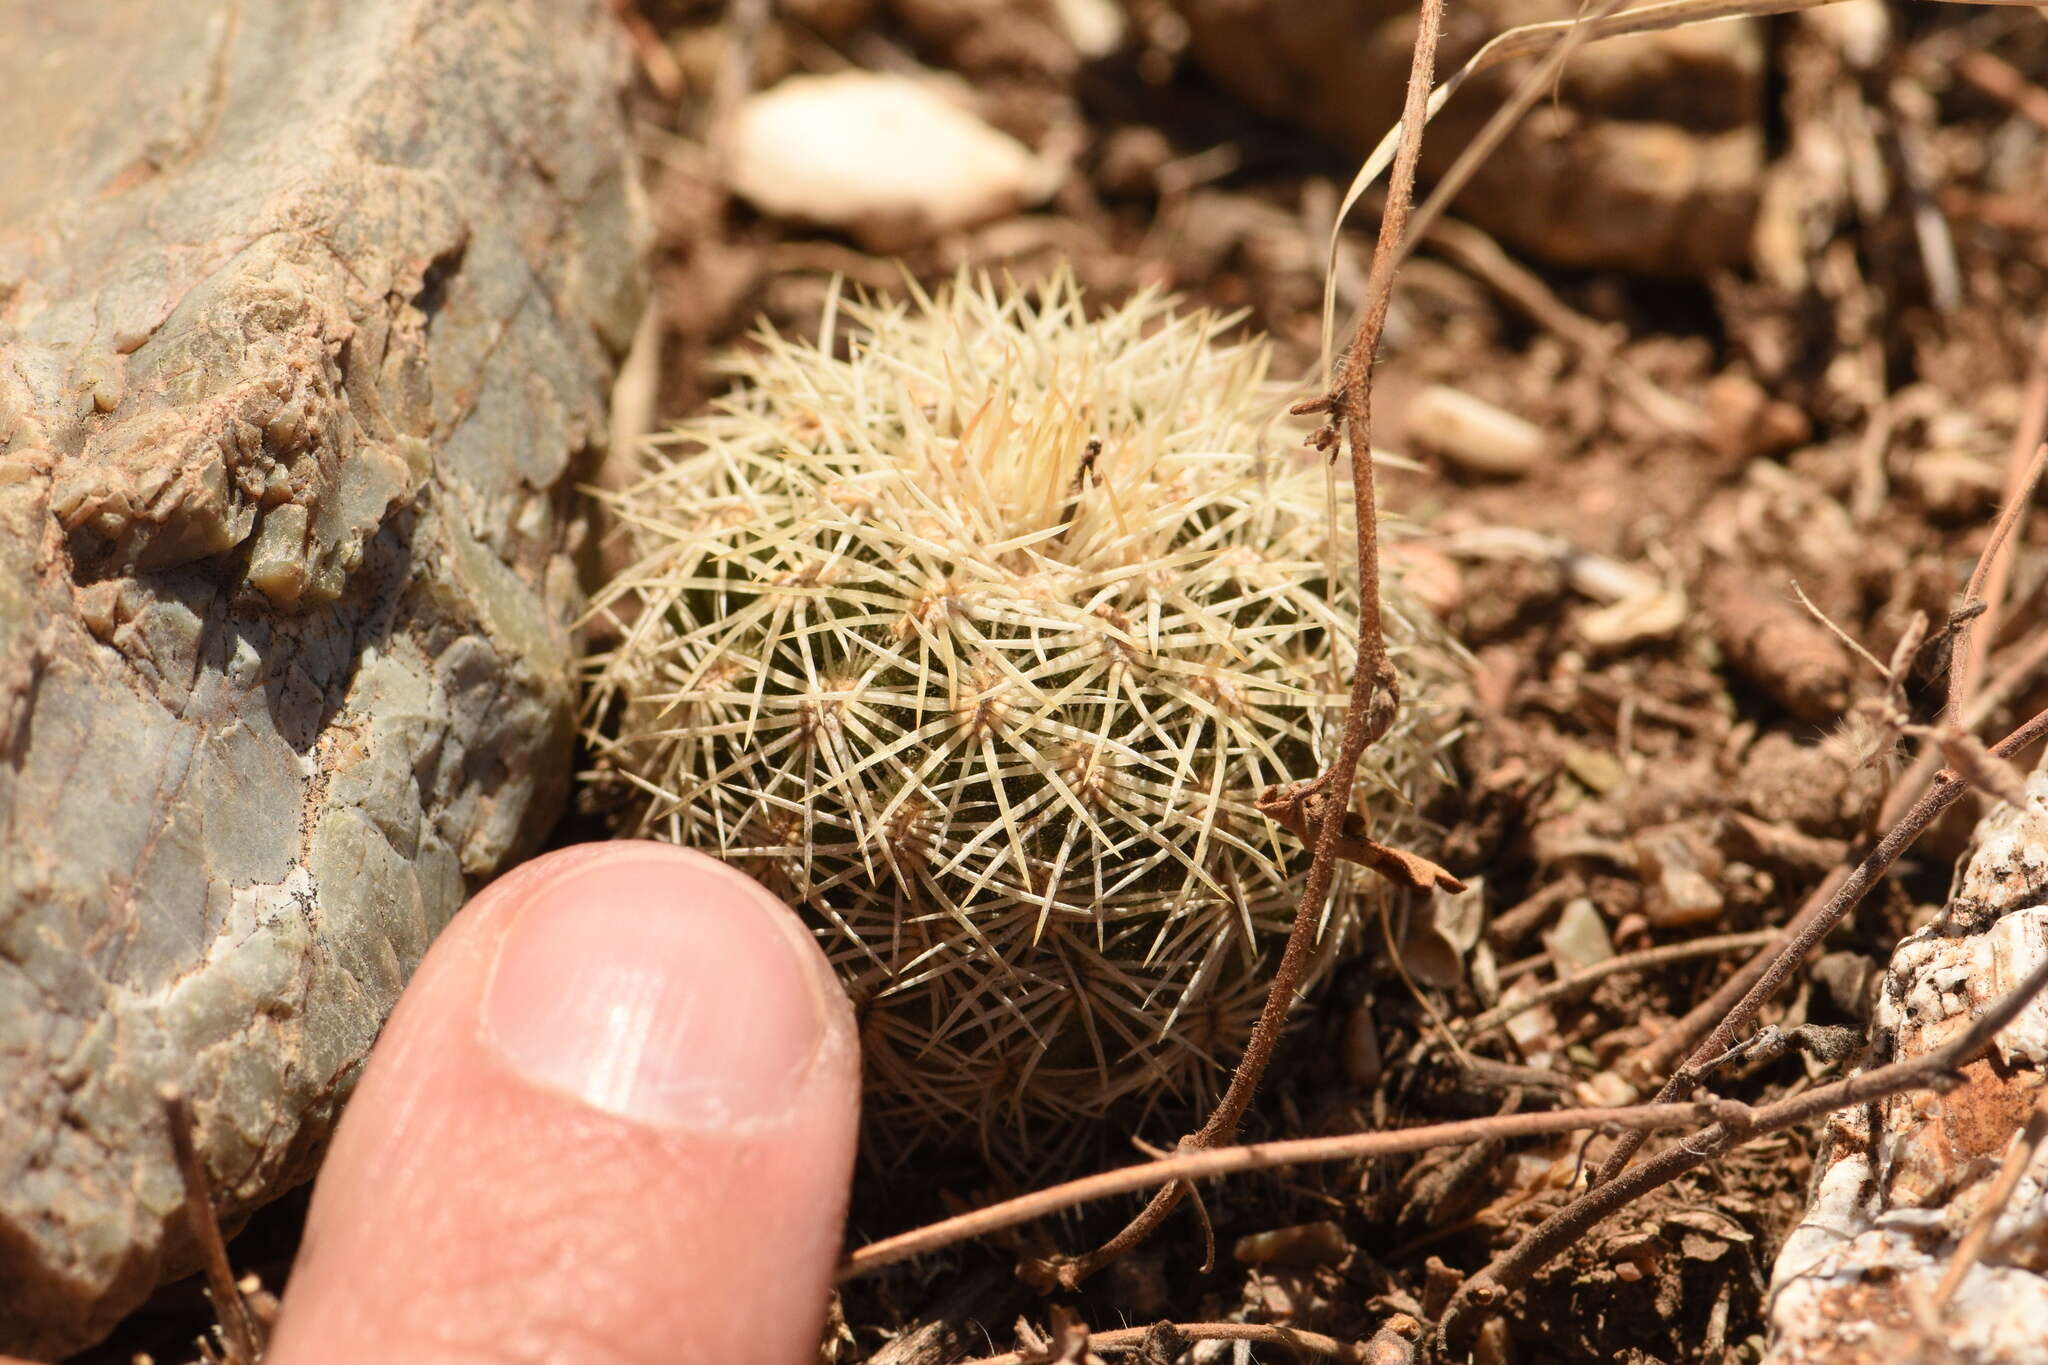 Image of Correll's hedgehog cactus